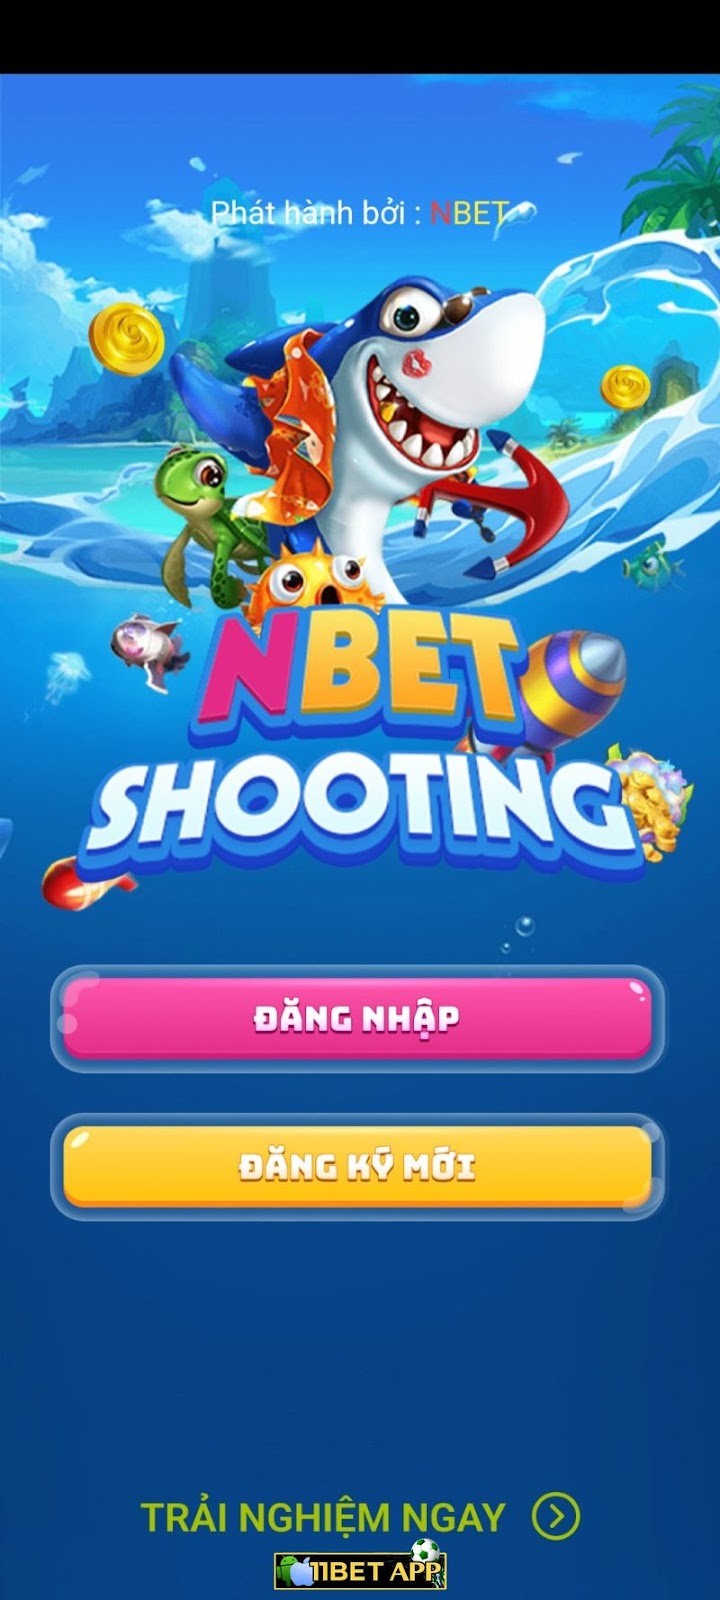 Tải app Nbet về thiết bị hệ điều hành iOS